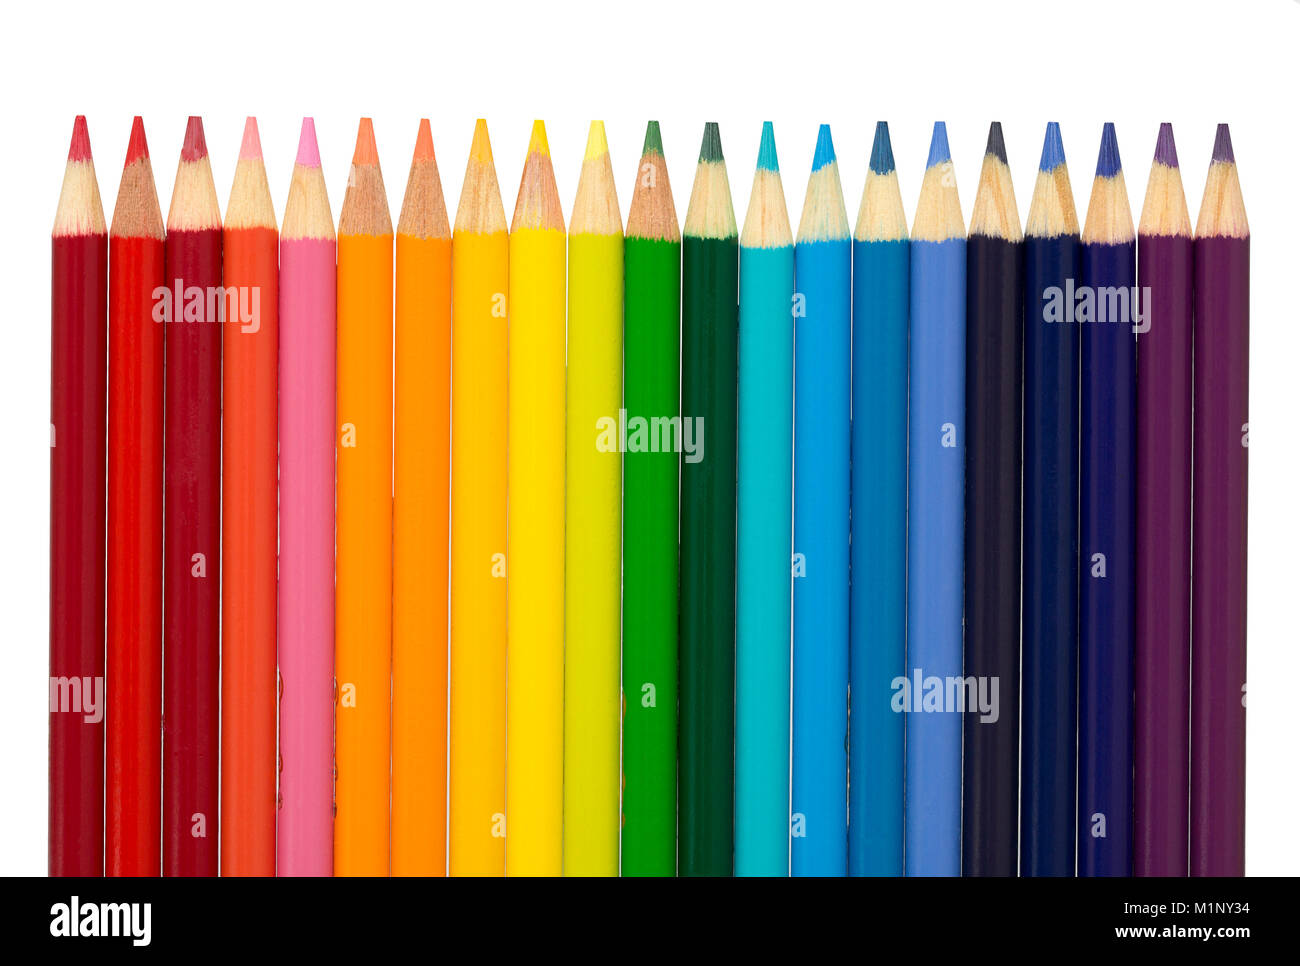 Un gruppo di matite di colore disposte in schema colori di un arcobaleno- rosso, arancione, giallo, verde, blu indaco, e violetta. Foto Stock